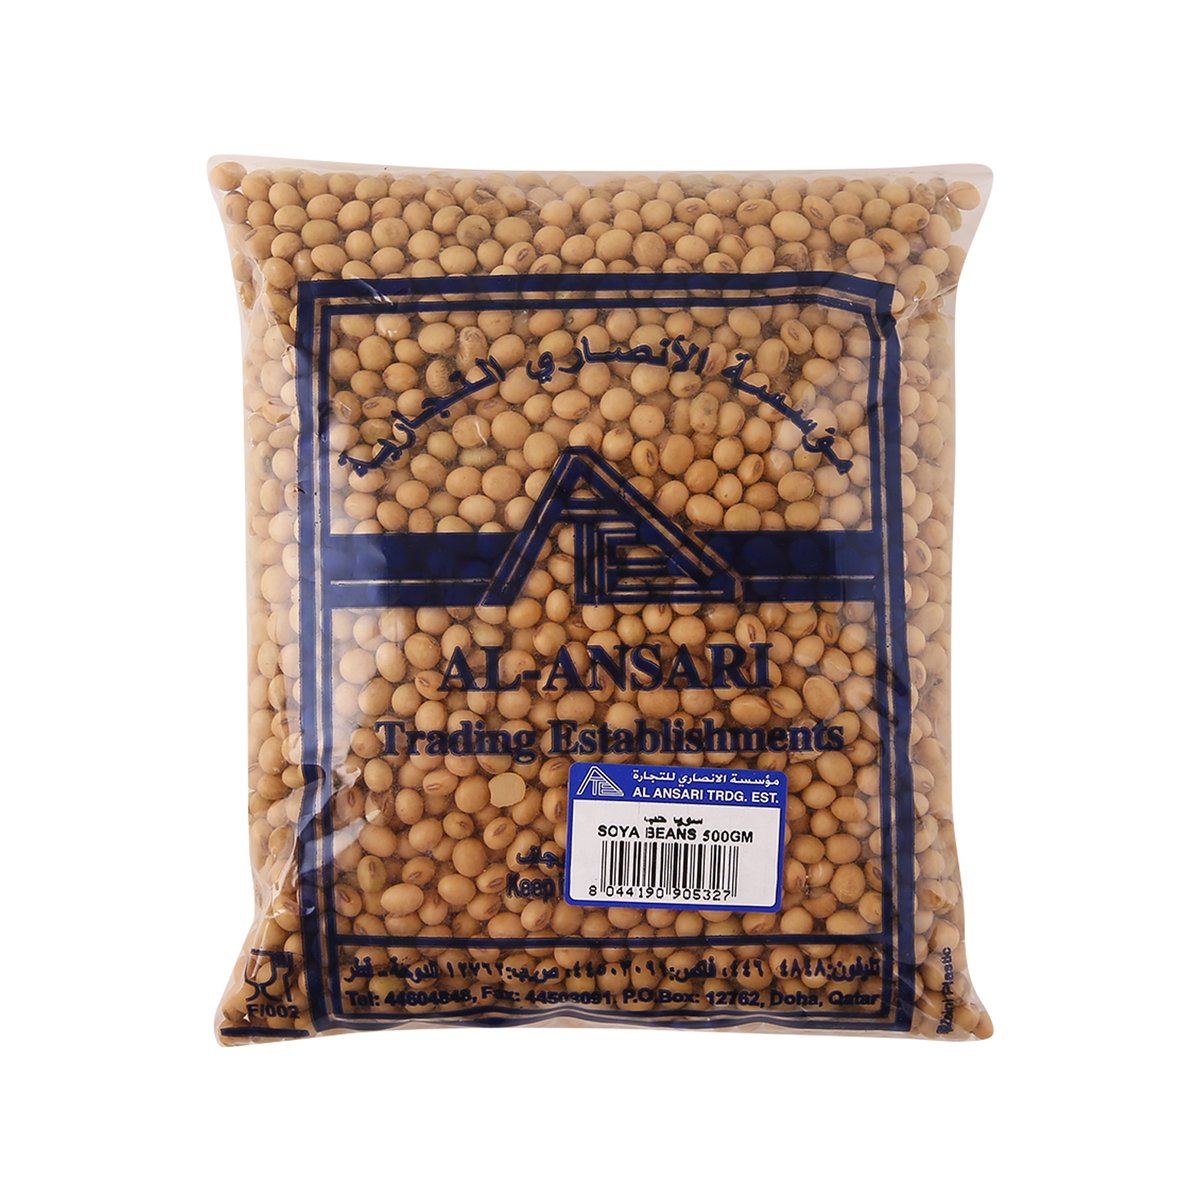 Al Ansari Soya Beans 500 g